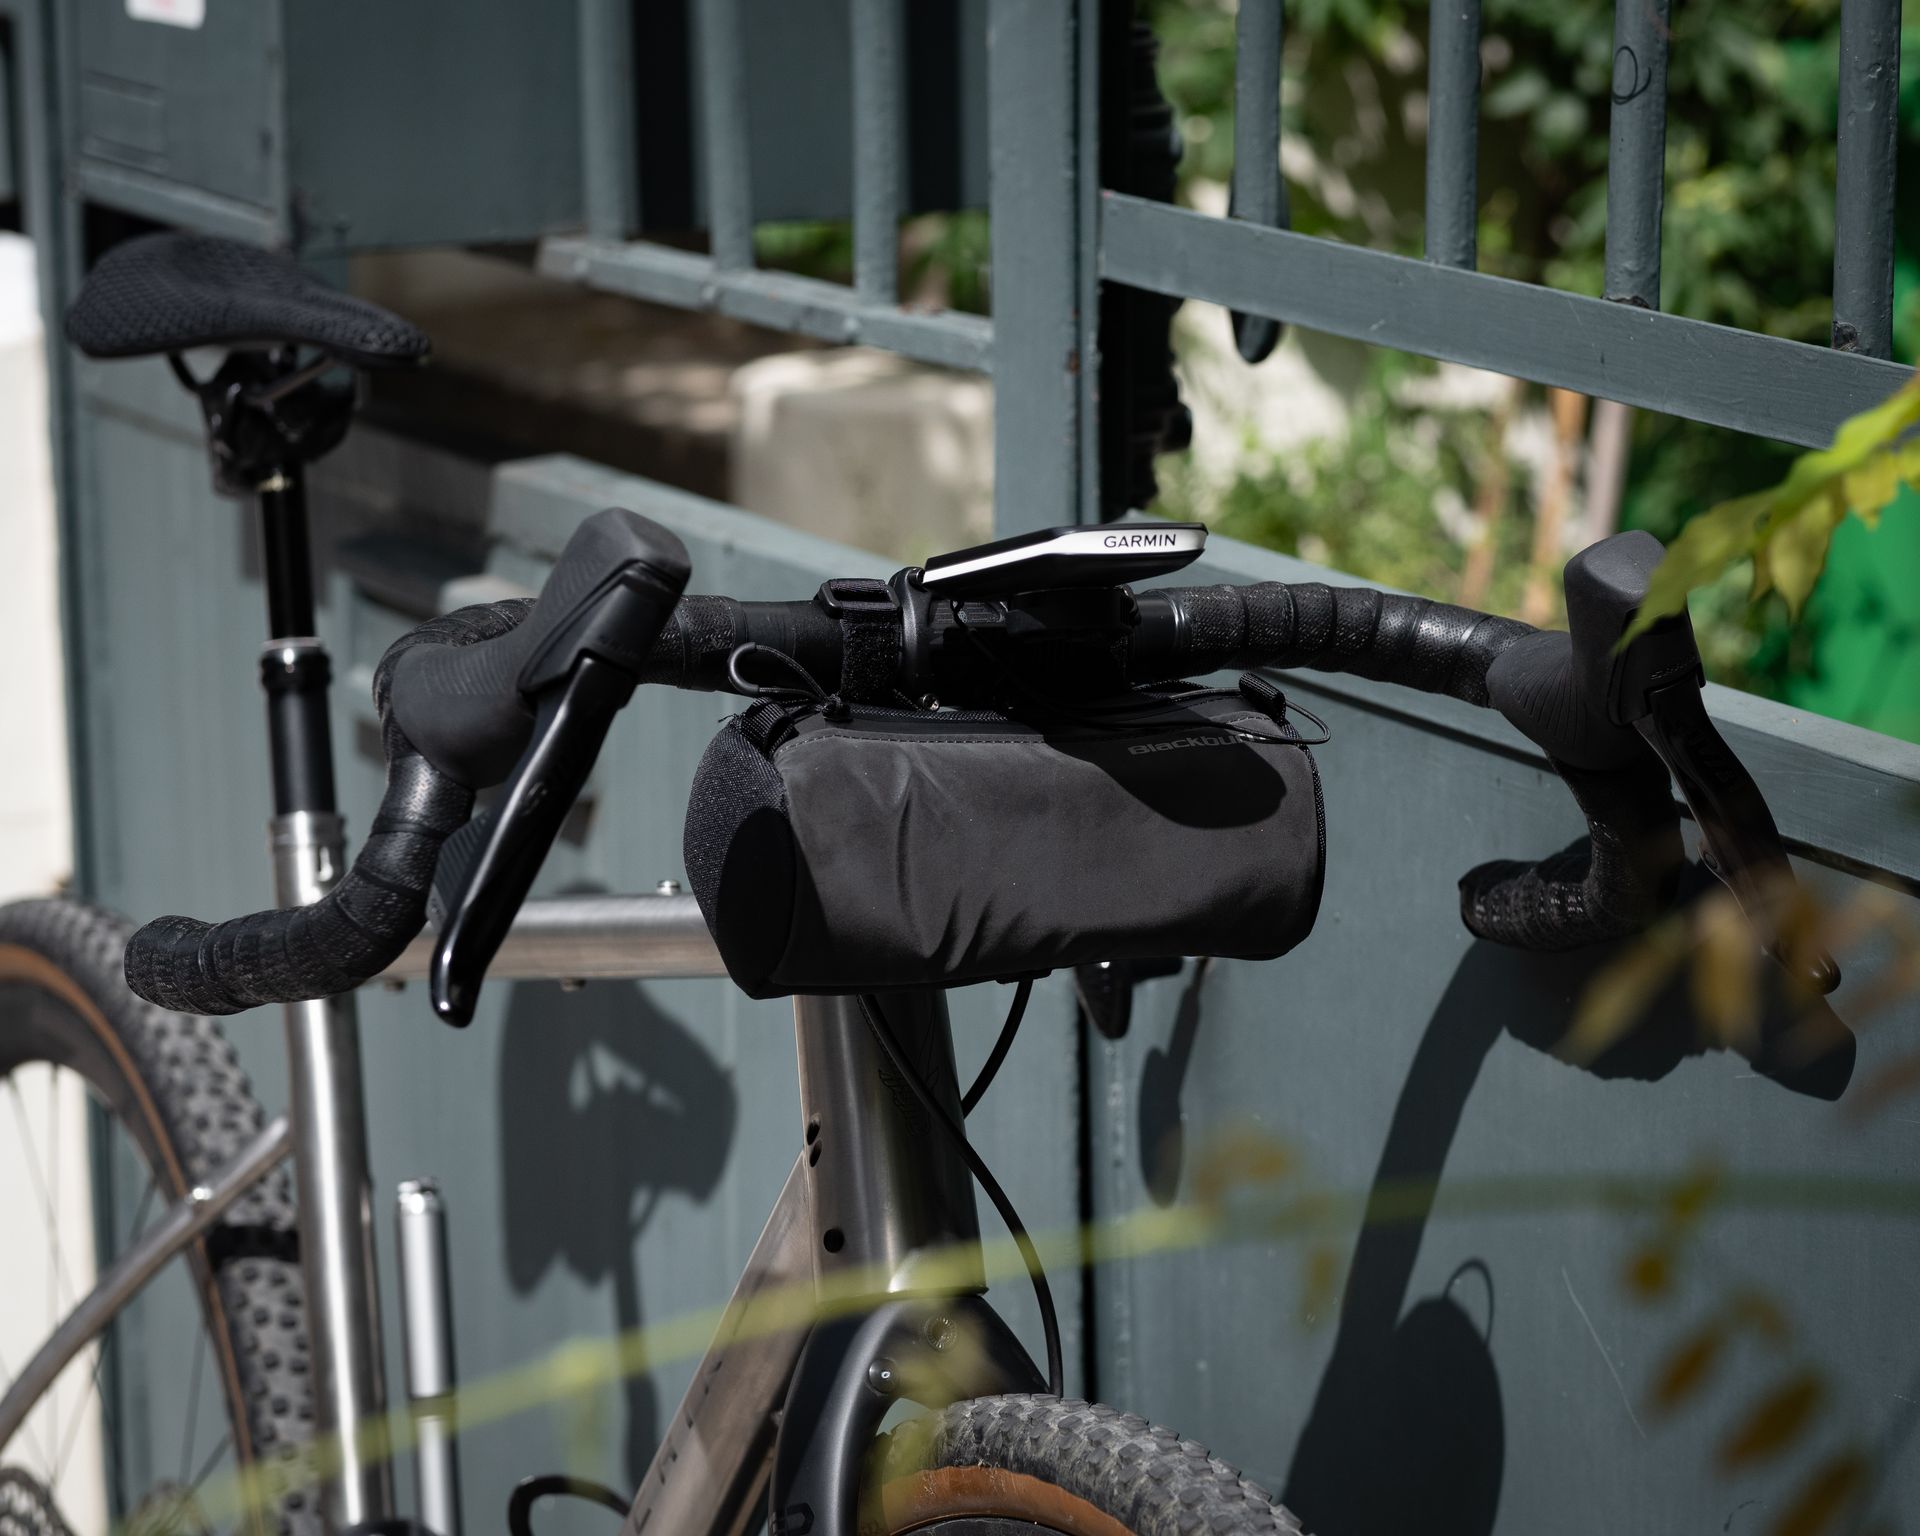 Magasin de cycles et atelier de réparation velo et montage vélo à la carte à Paris 13eme spécialisé dans le gravel et le voyage. montage velo a la carte titane Chiru Vagus